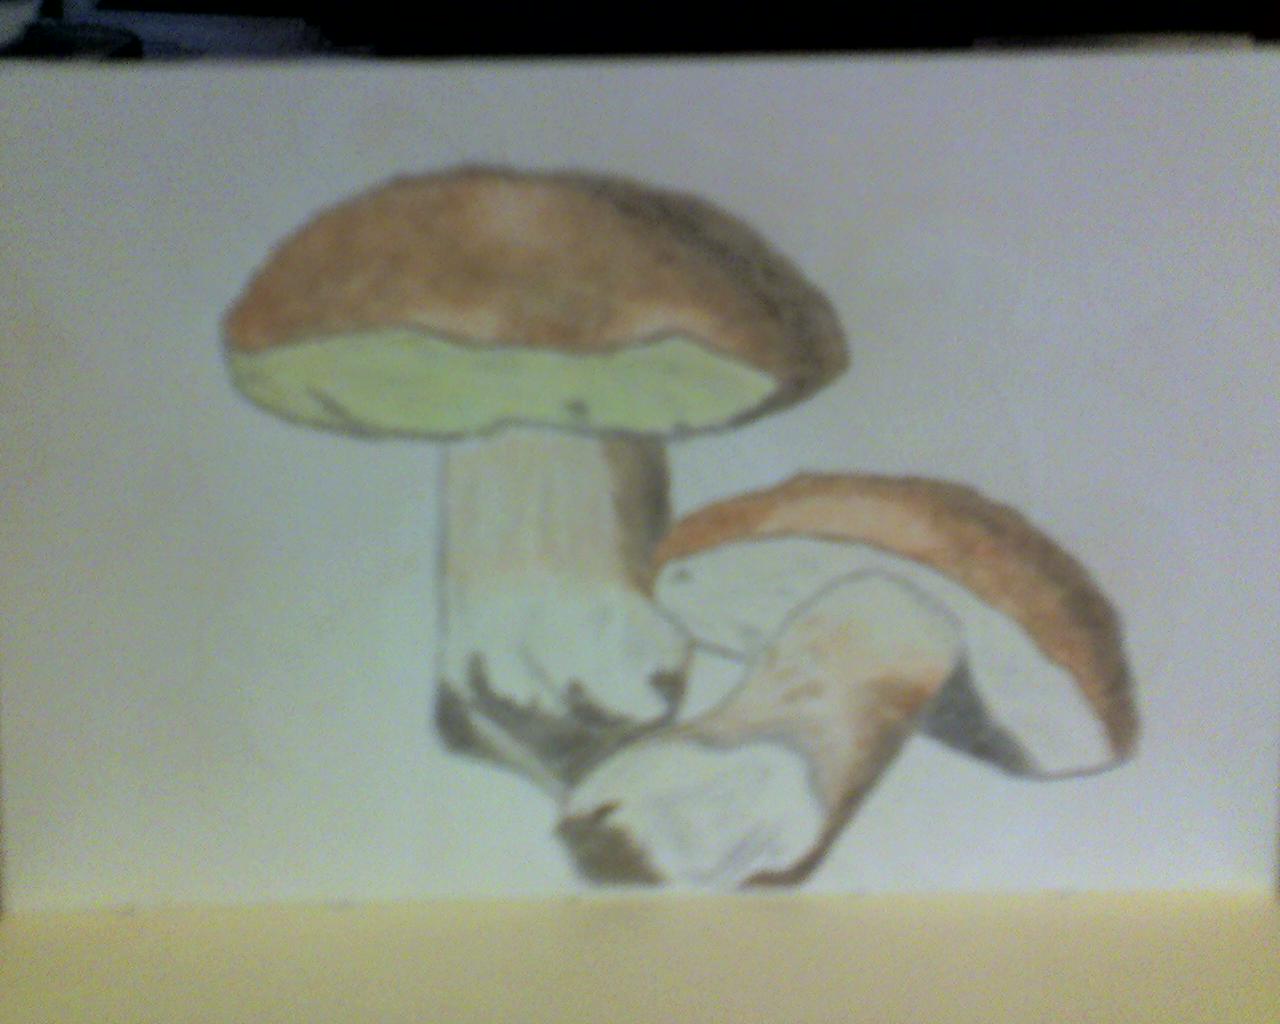 Funghi di bosco